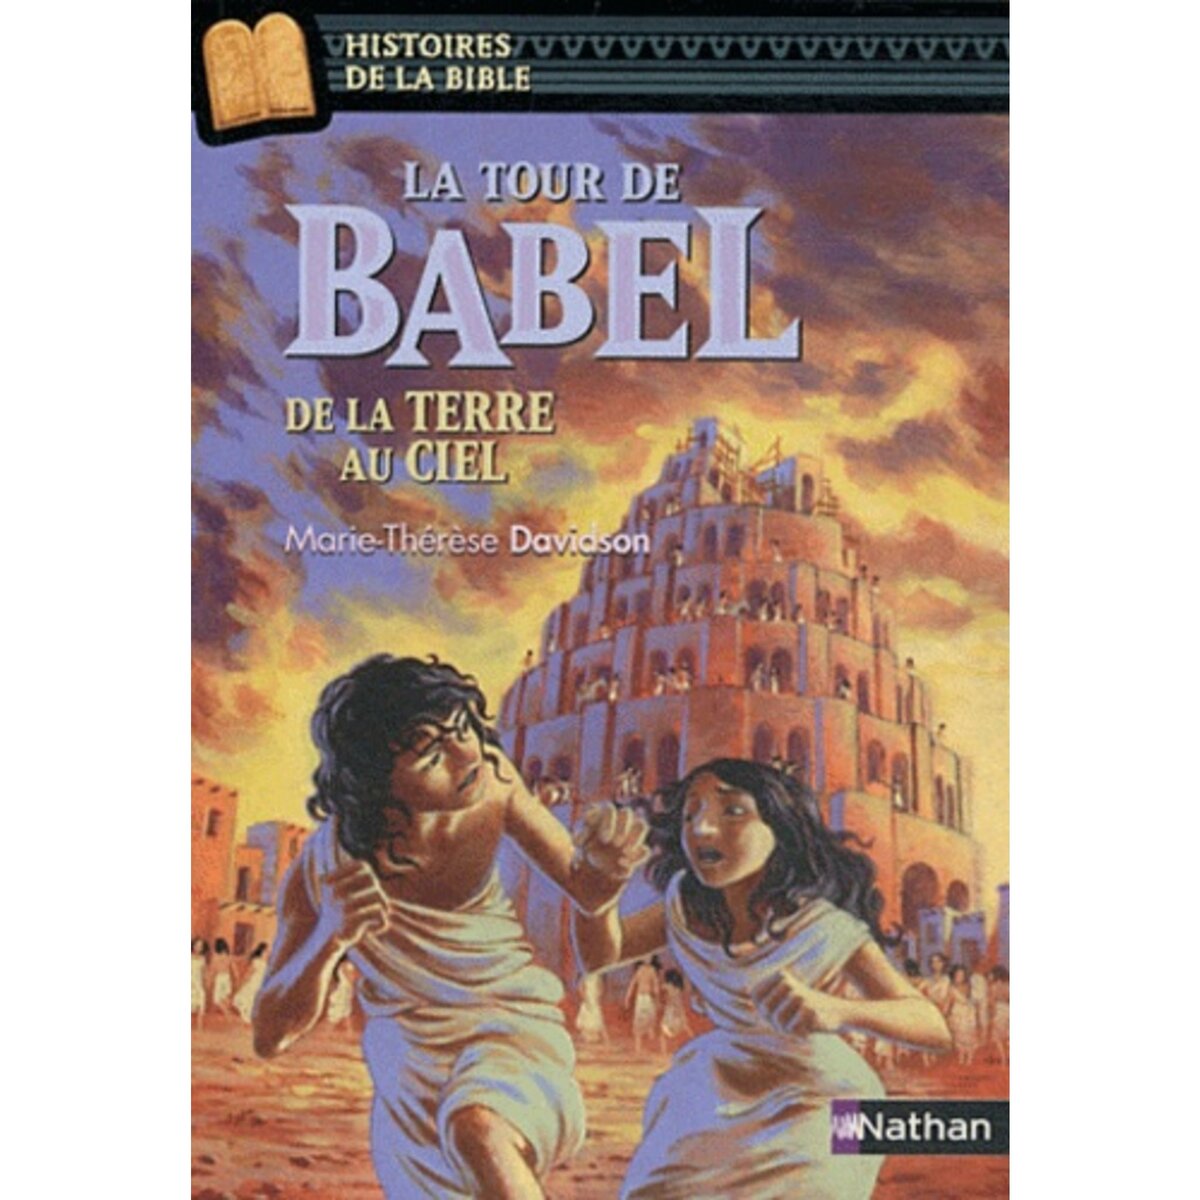  LA TOUR DE BABEL. DE LA TERRE AU CIEL, Davidson Marie-Thérèse